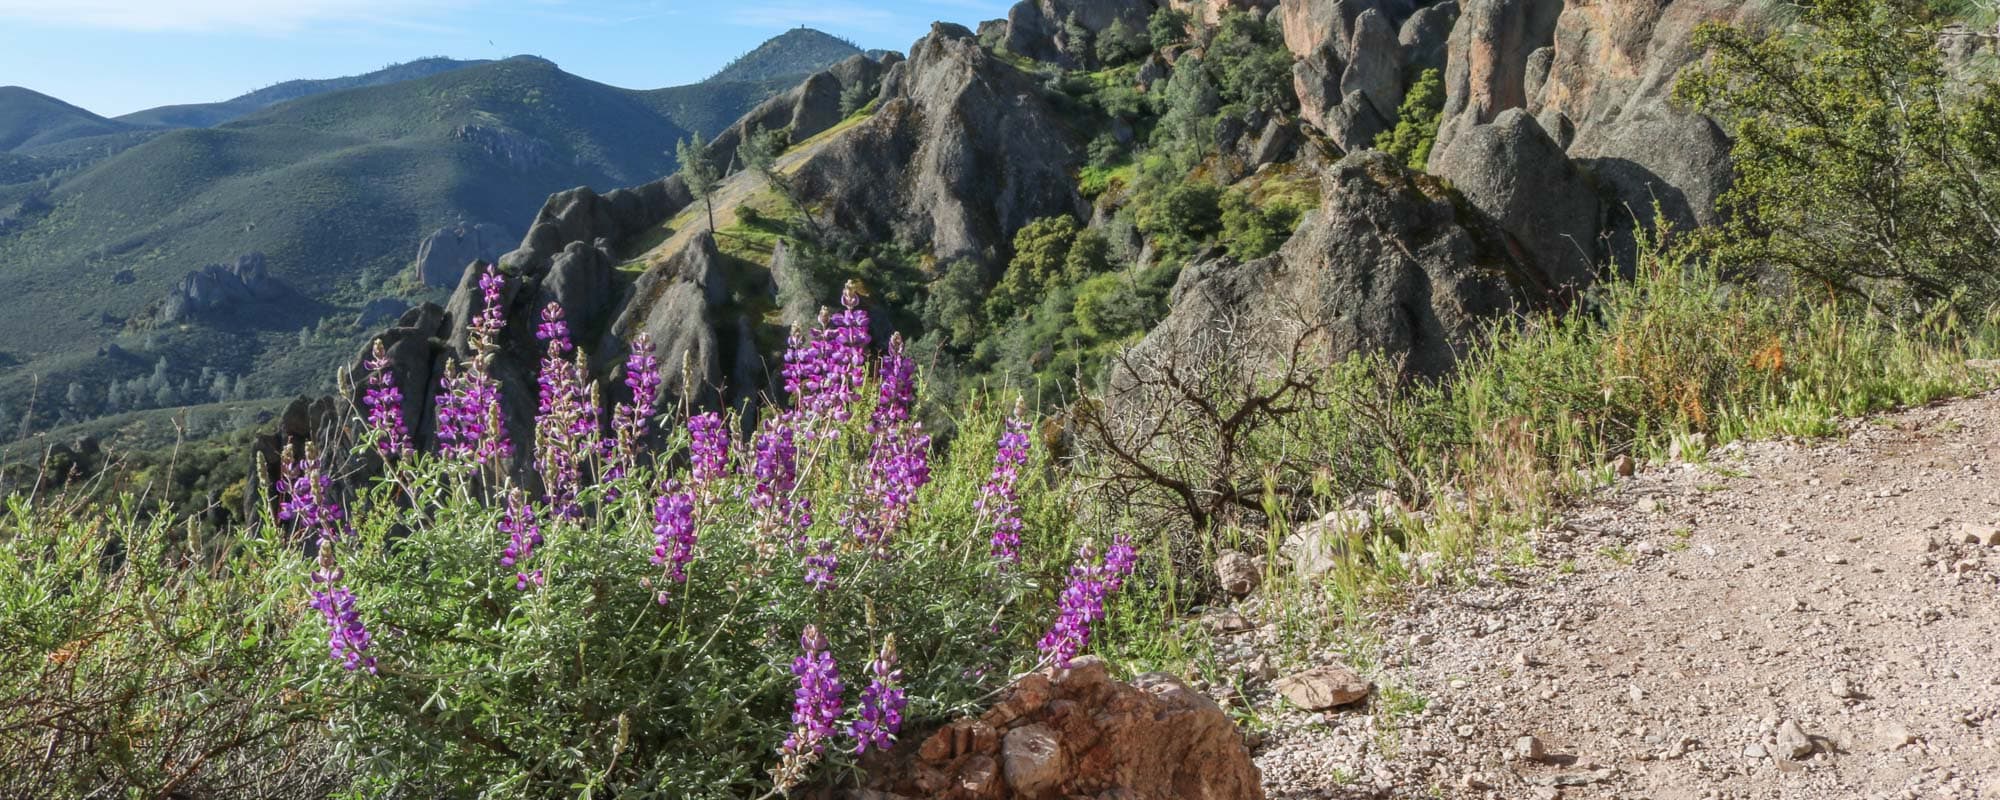 Pinnacles National Park - Banner Wildflowers